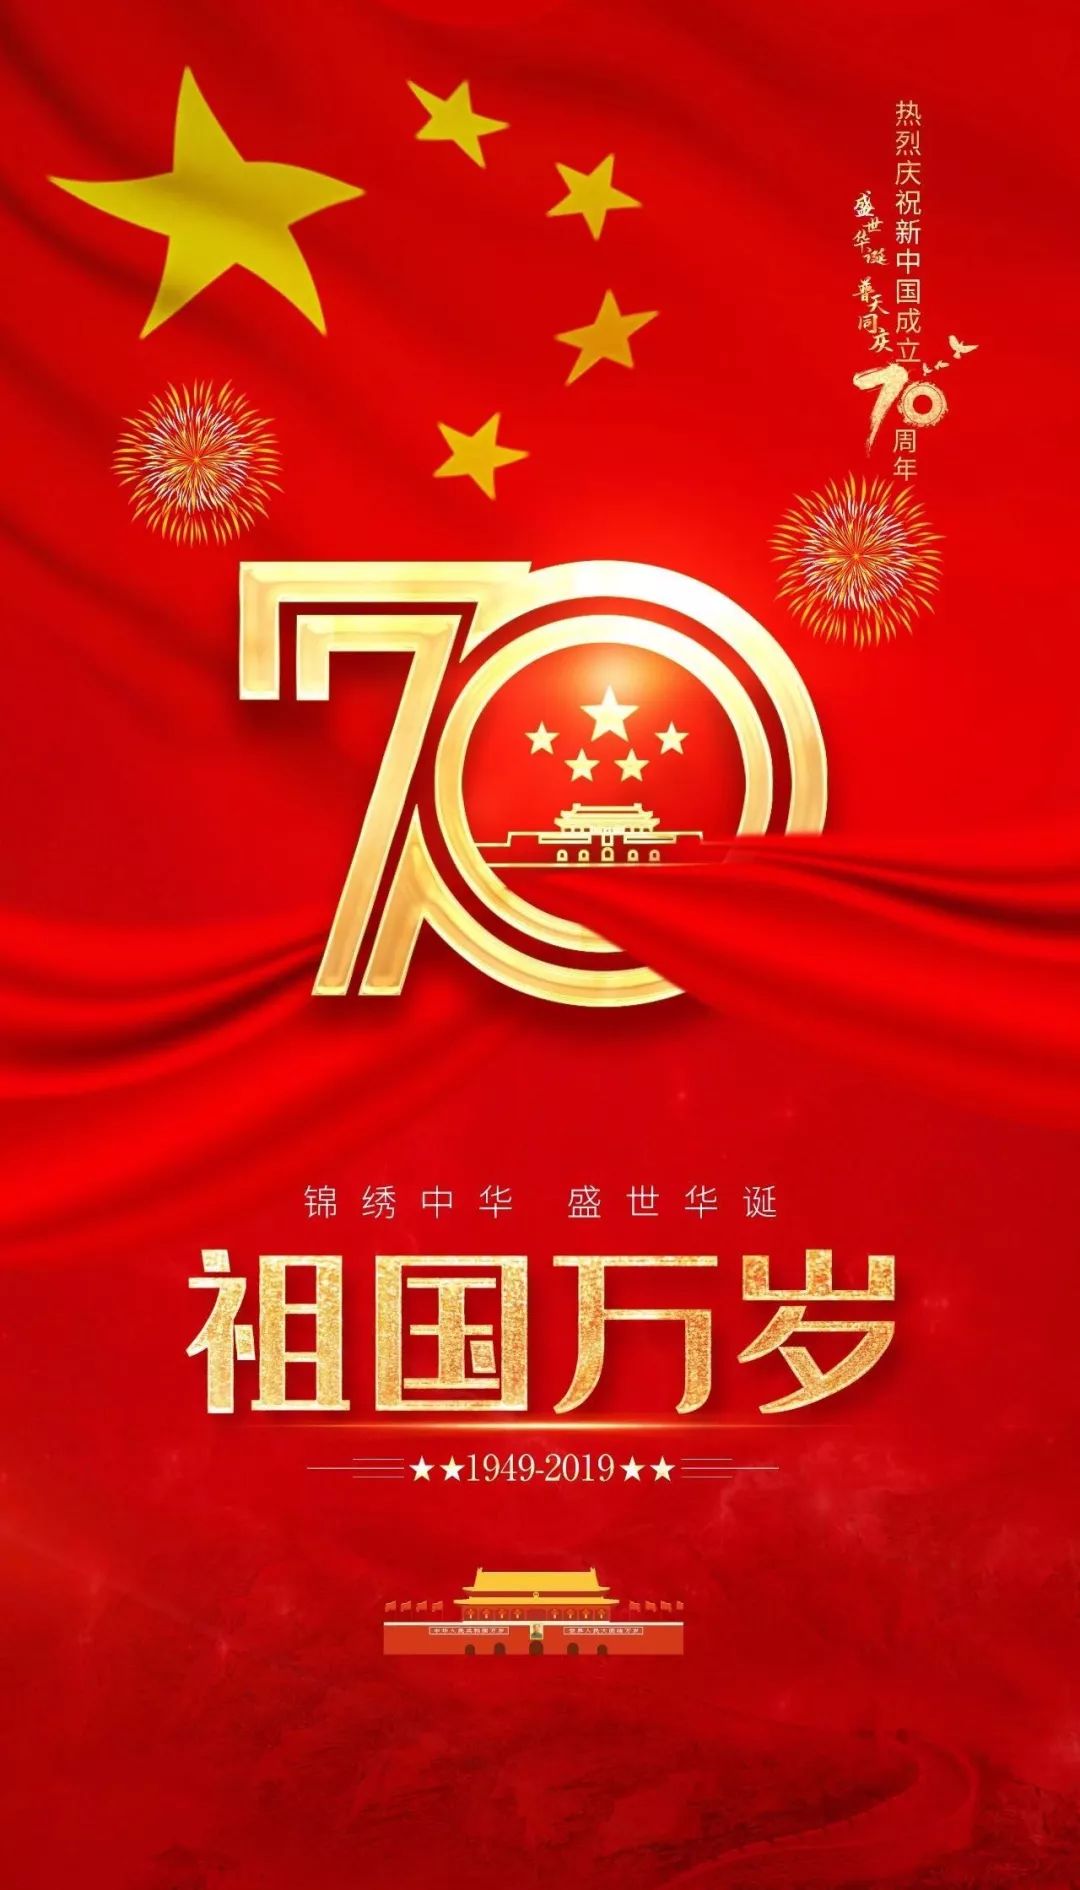 热烈庆祝中华人民共和国成立70周年!_五星红旗